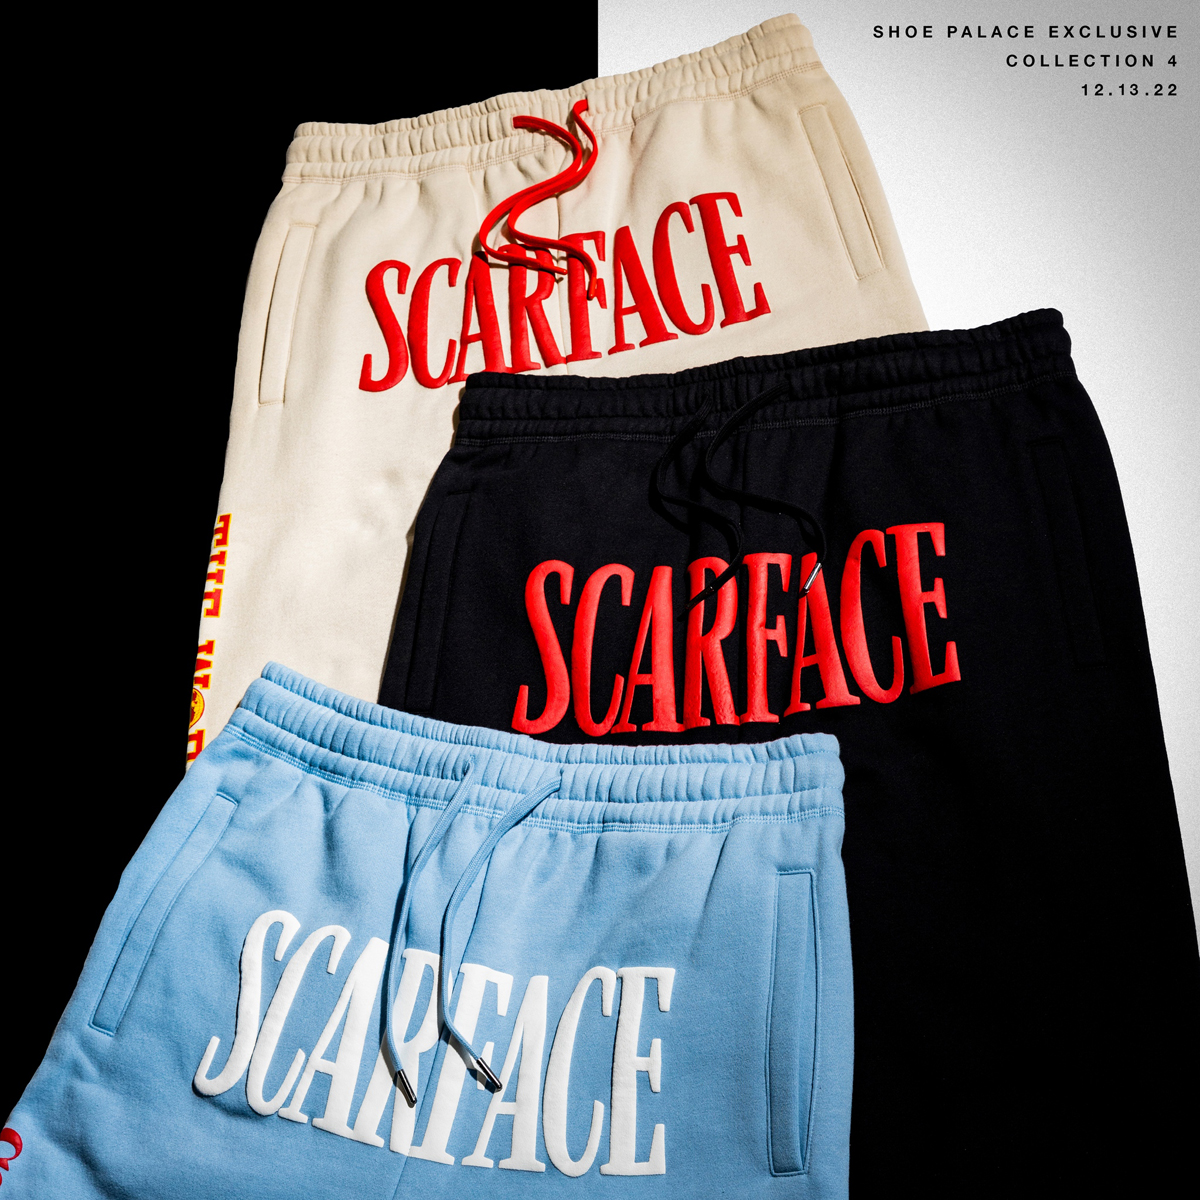 Scarface-Shoe-Palace-Shorts.